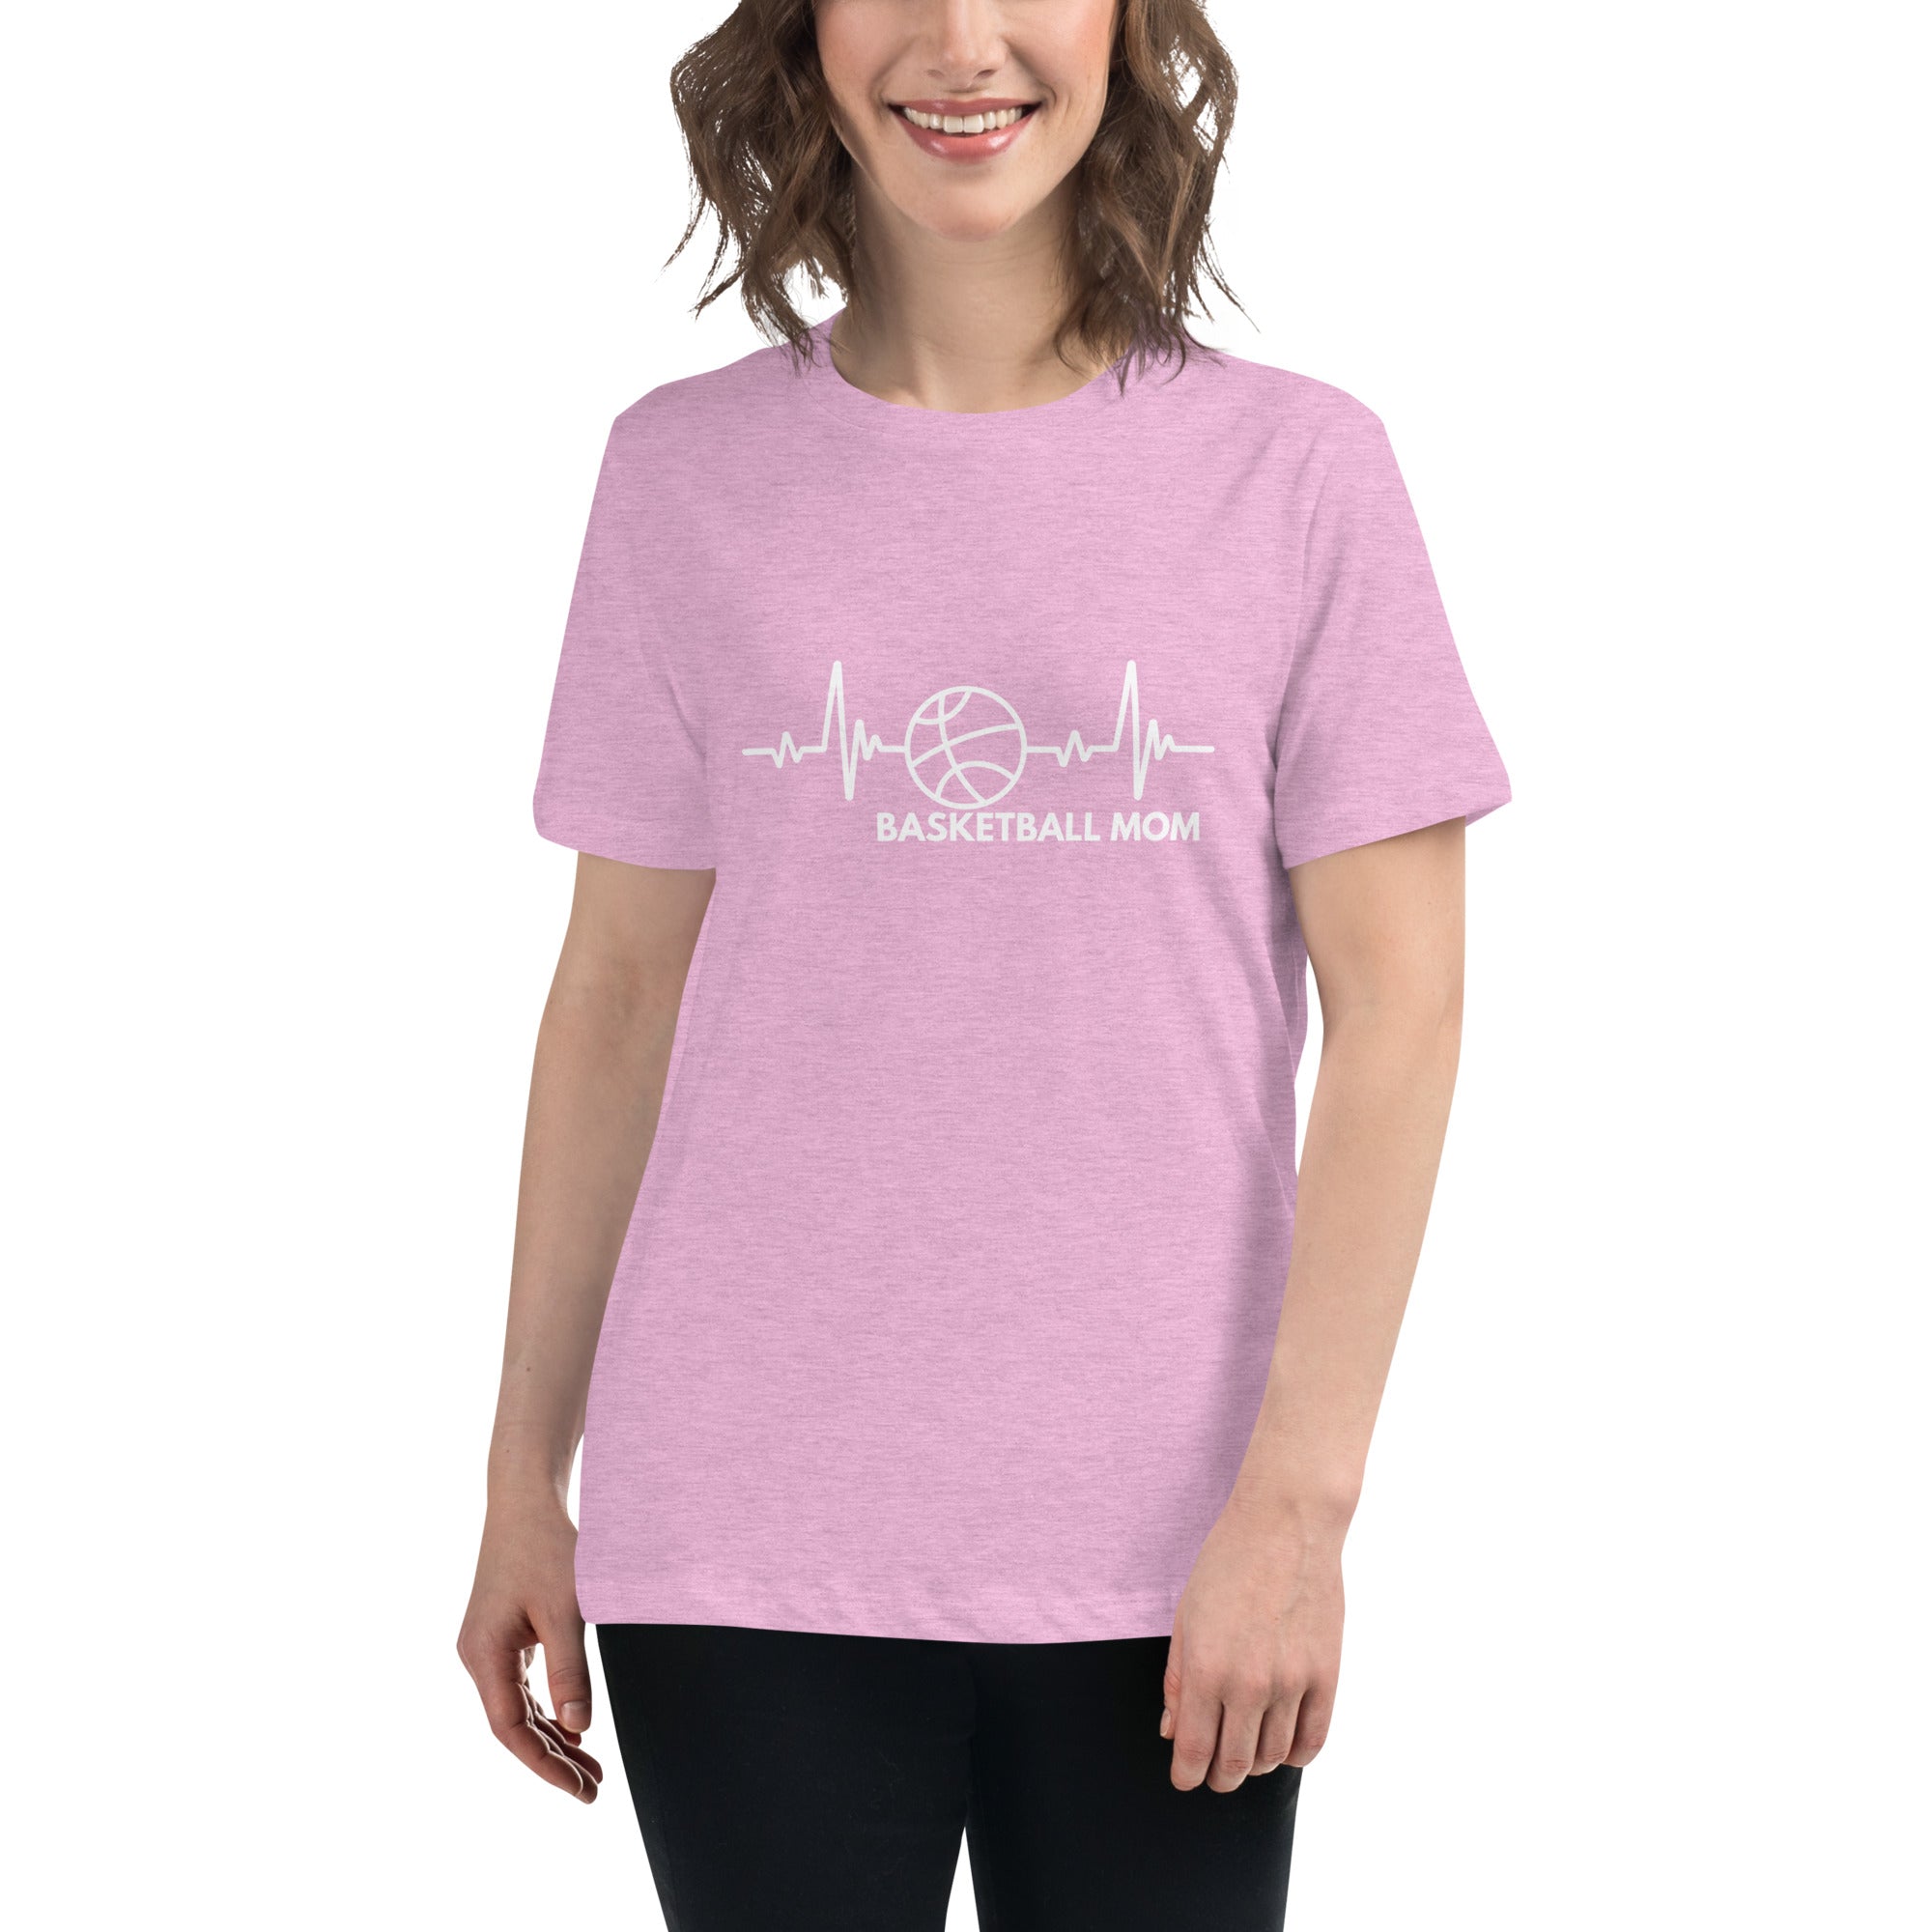 Basketball Mom Women's Premium T-Shirt